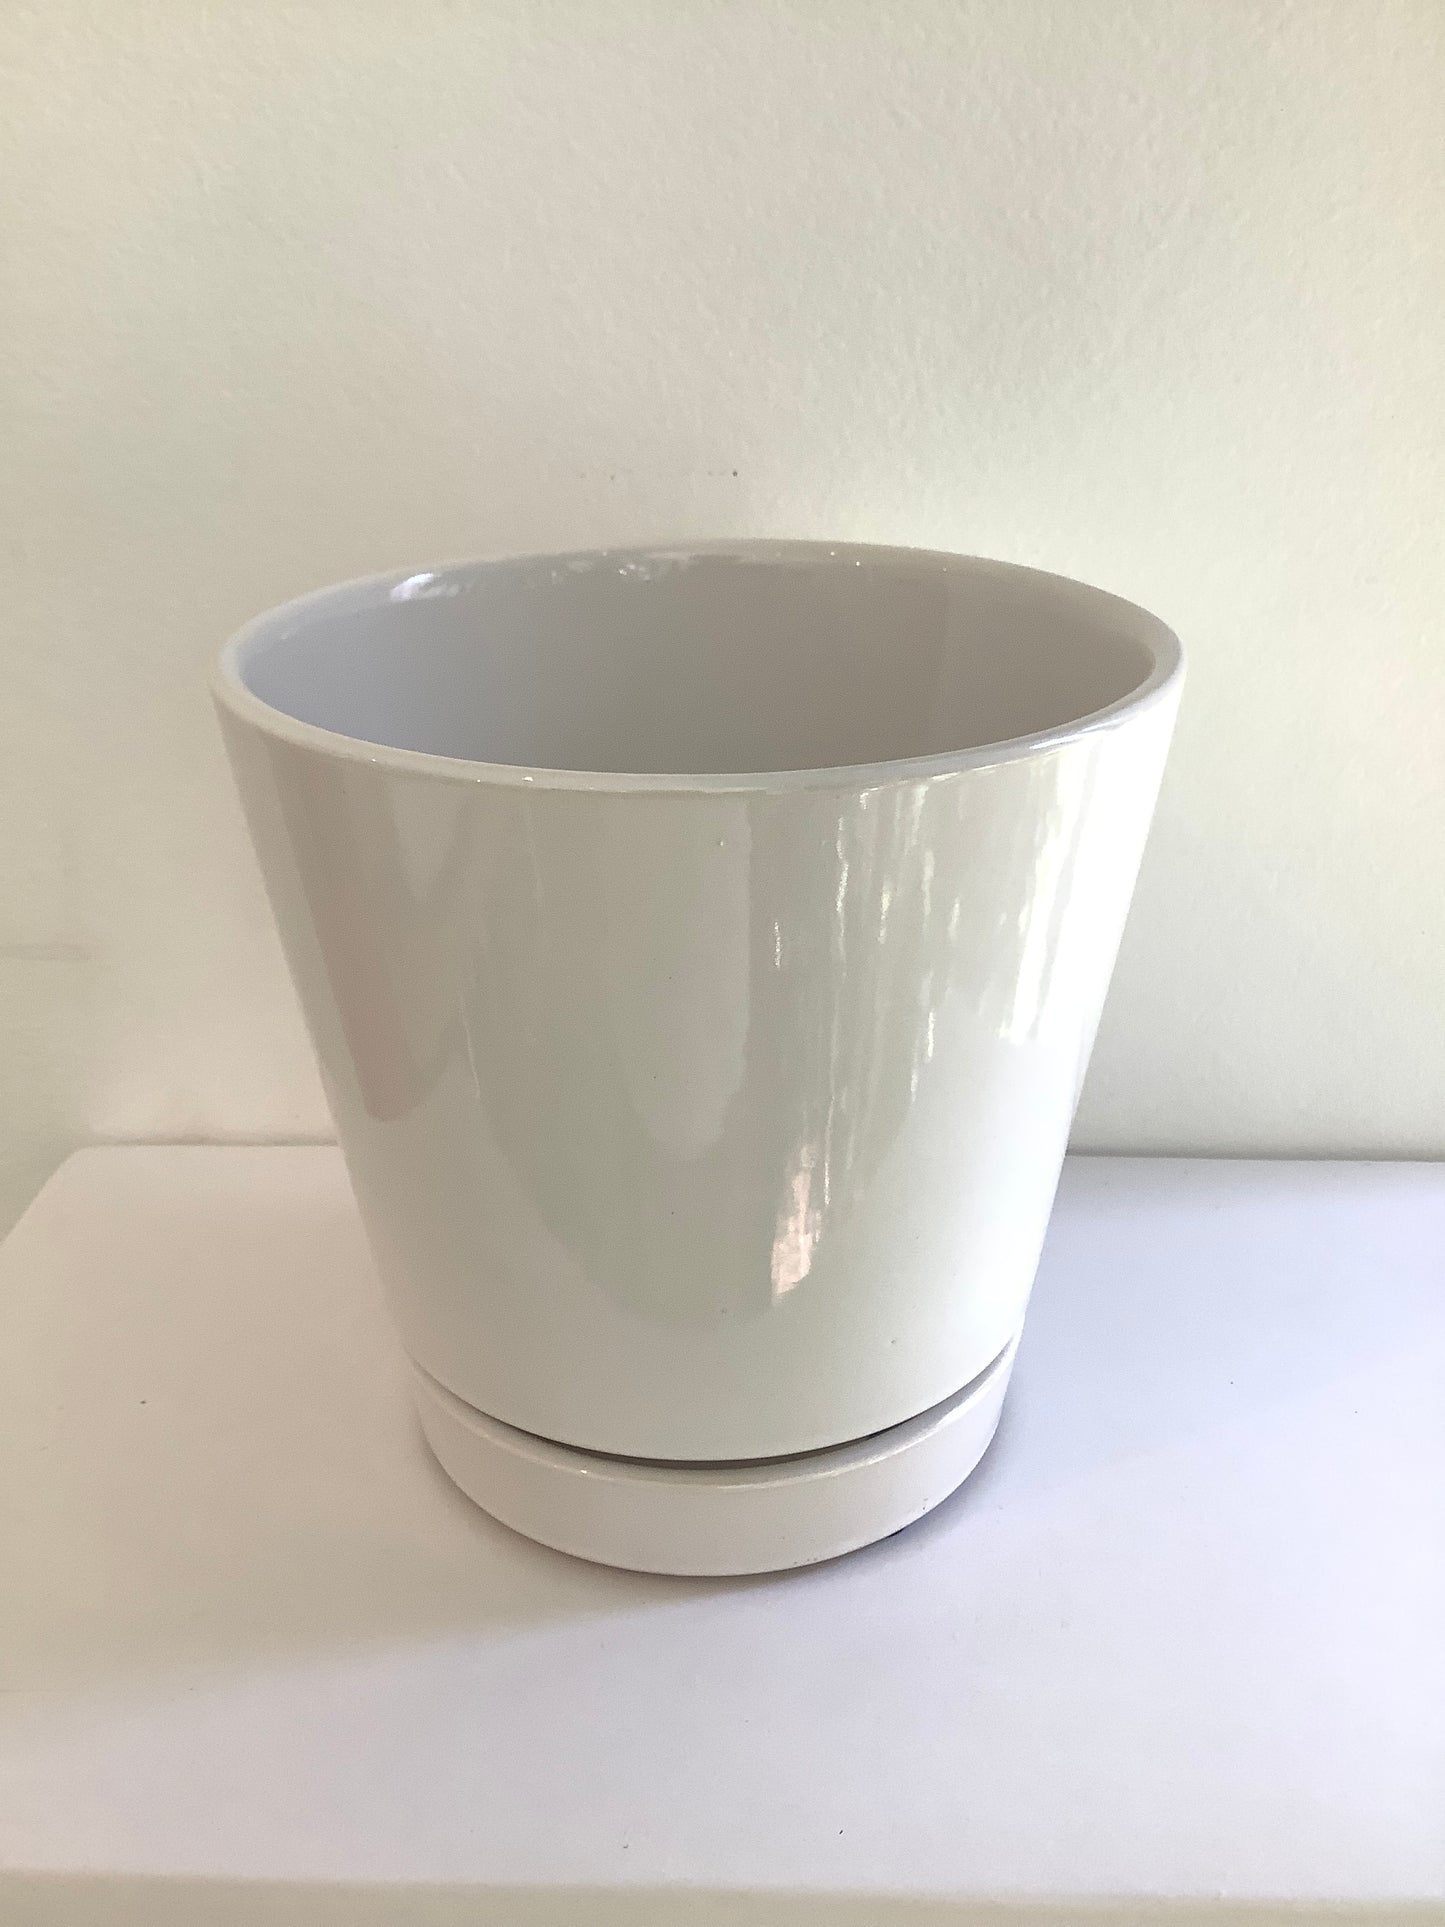 6" Gloss White Ceramic Planter Pot w/ Saucer